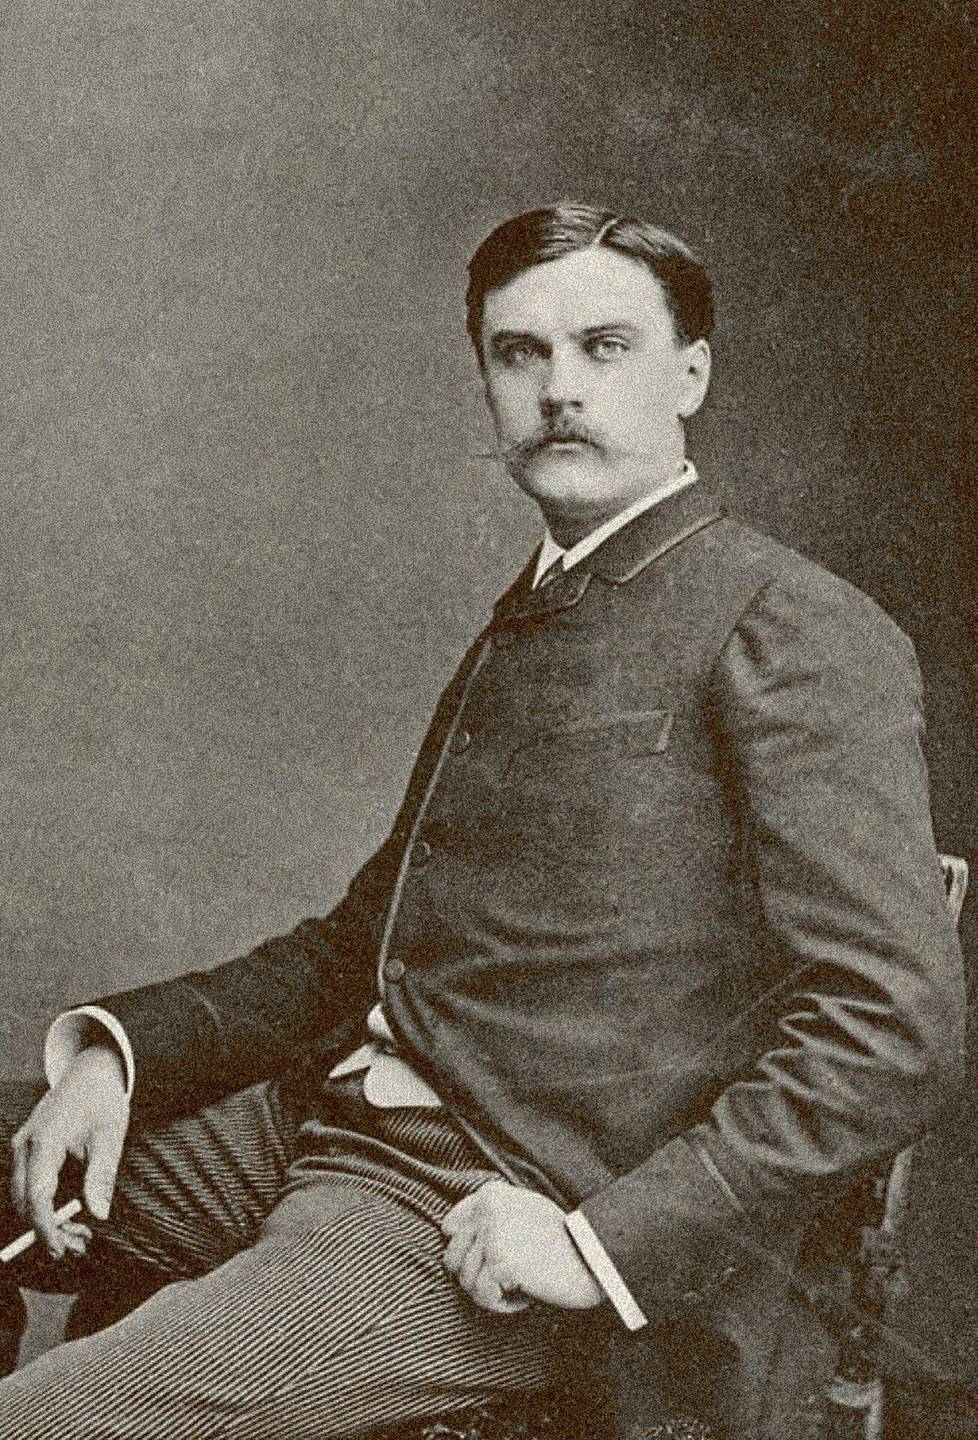 Albert Edelfelt, moderni, muttei radikaali, sanotaan kirjan kuvatekstissä. – Kuva on 1880-luvun lopulta, todennäköisesti Pariisissa otettu. 